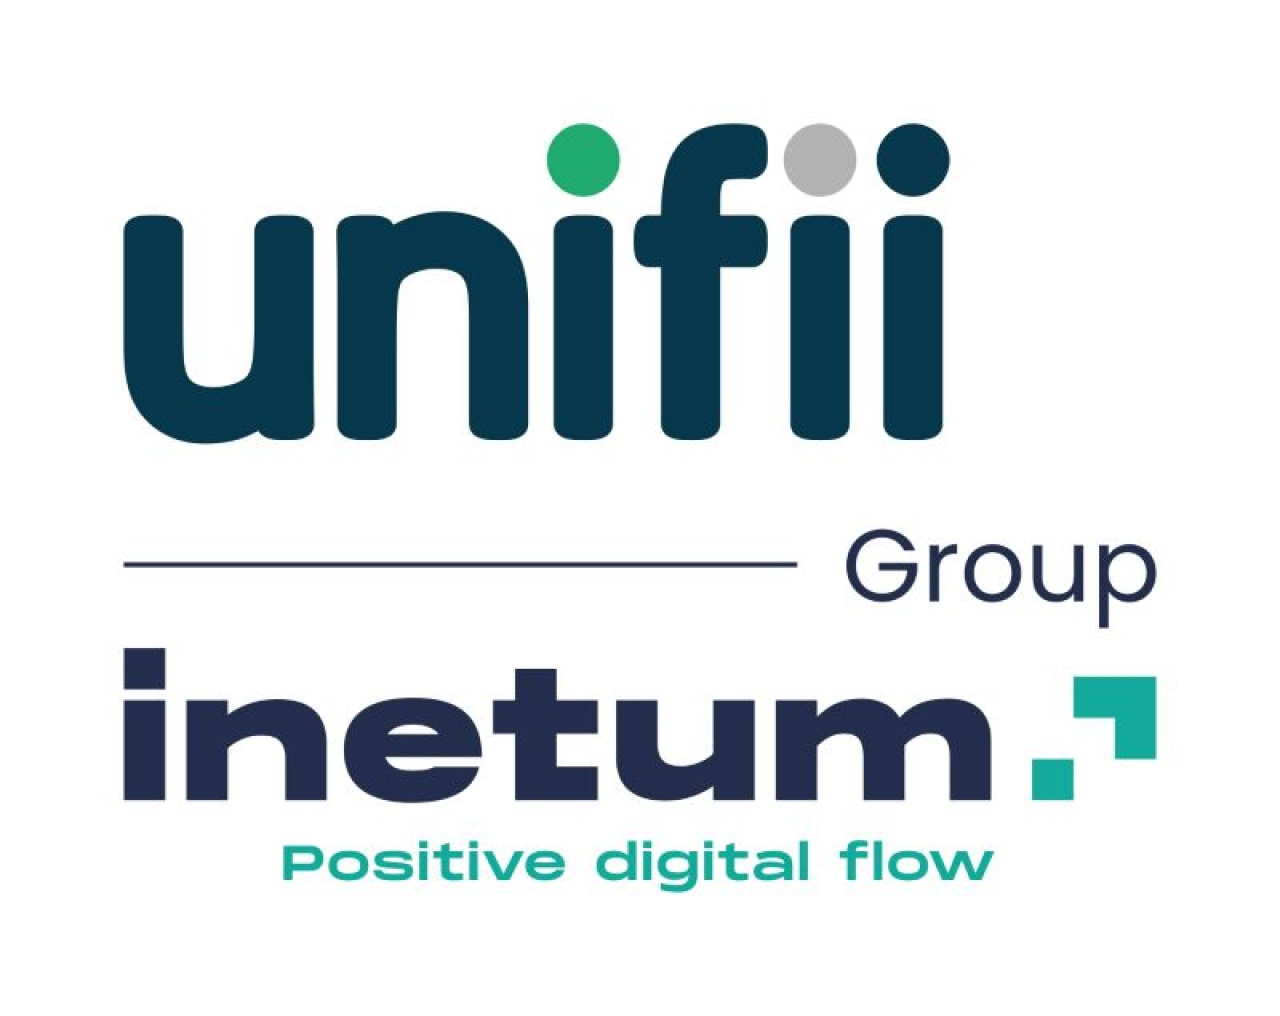 Inetum is acquiring Unifii.